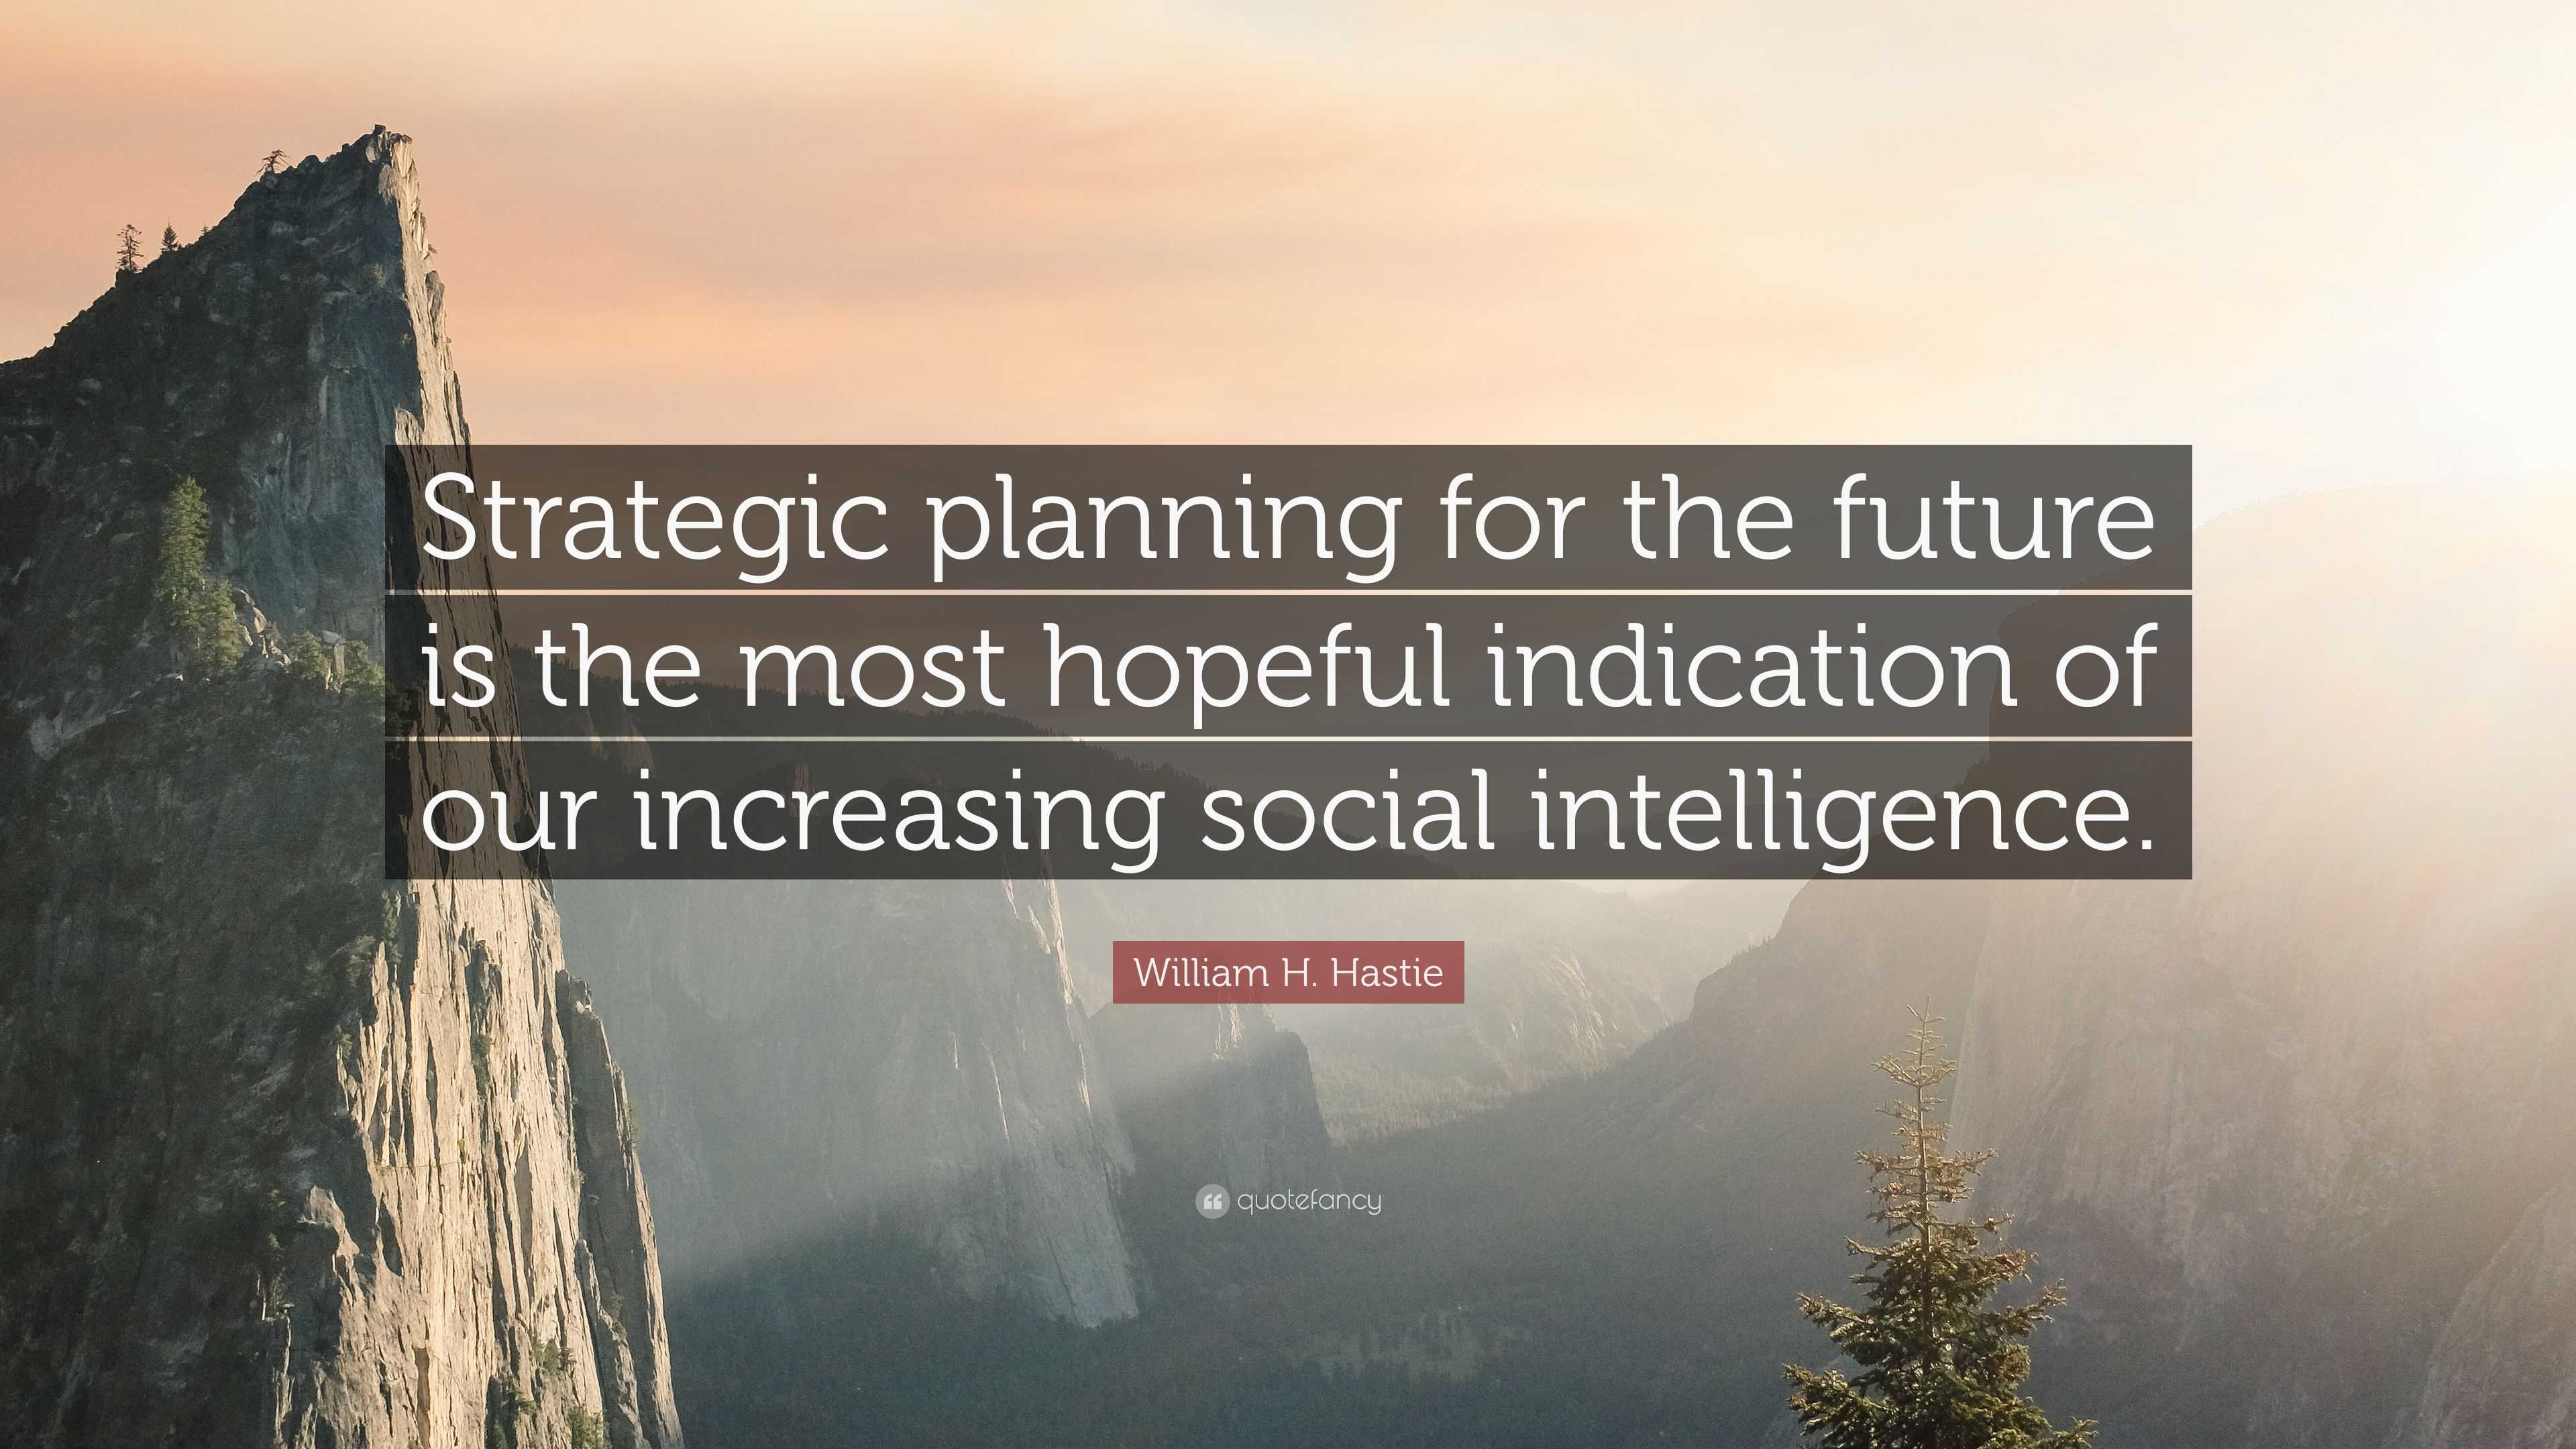 William H. Hastie Quote “Strategic planning for the